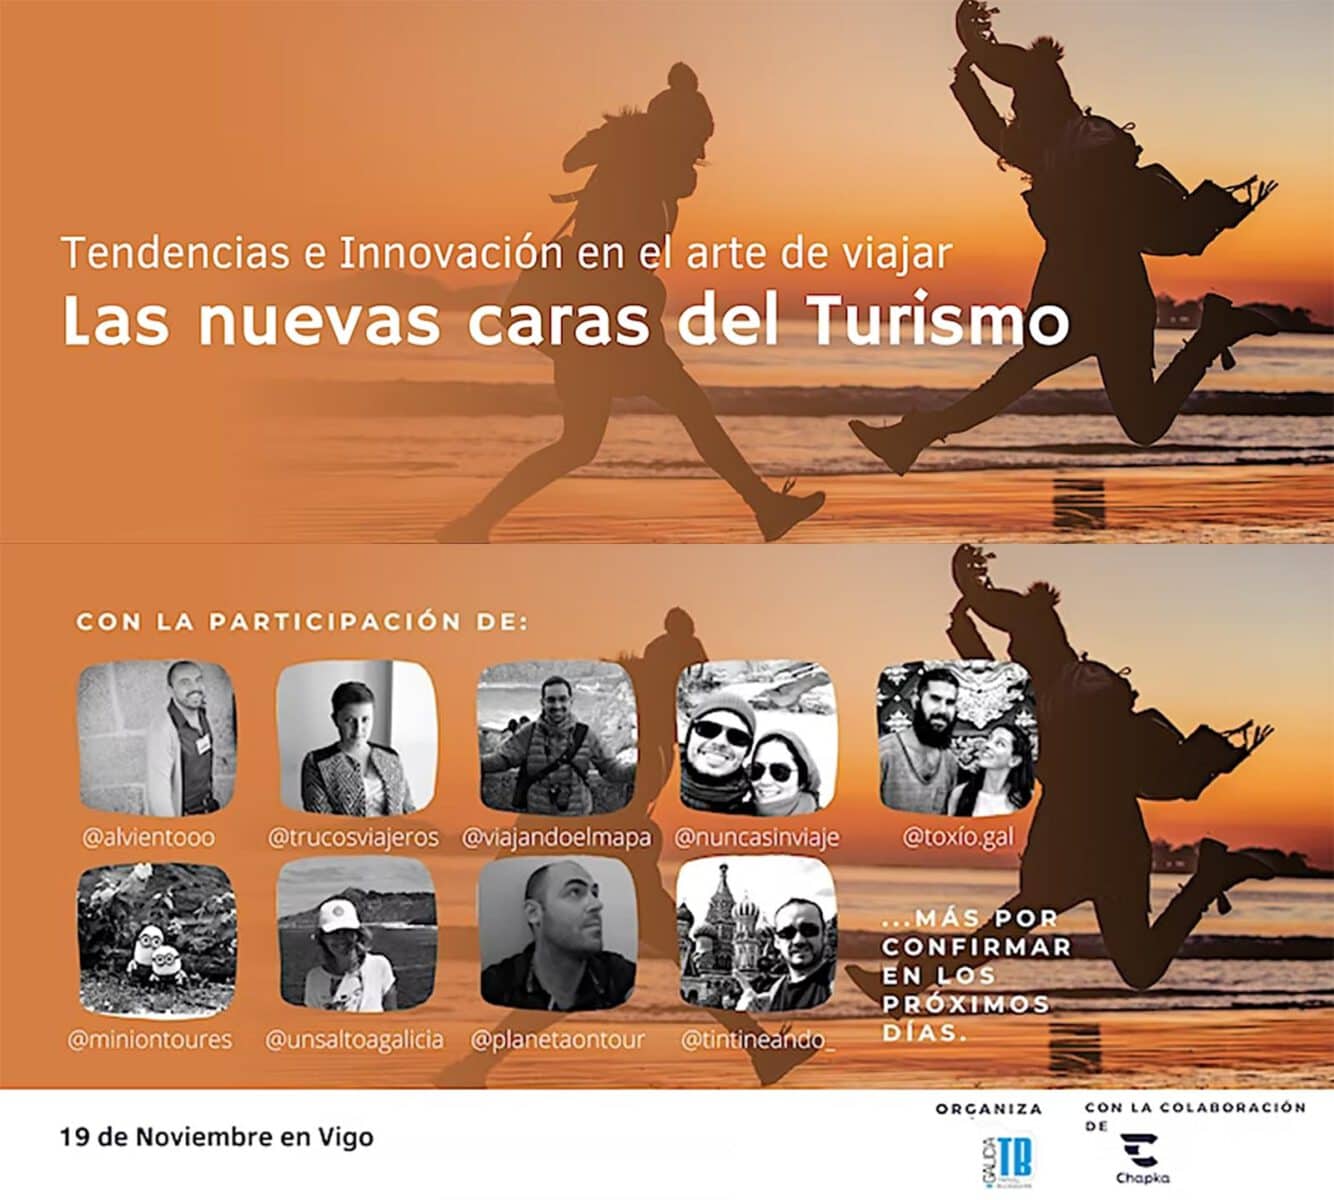 Somos ponentes en las Jornadas de GaliciaTB "Las nuevas caras del turismo"